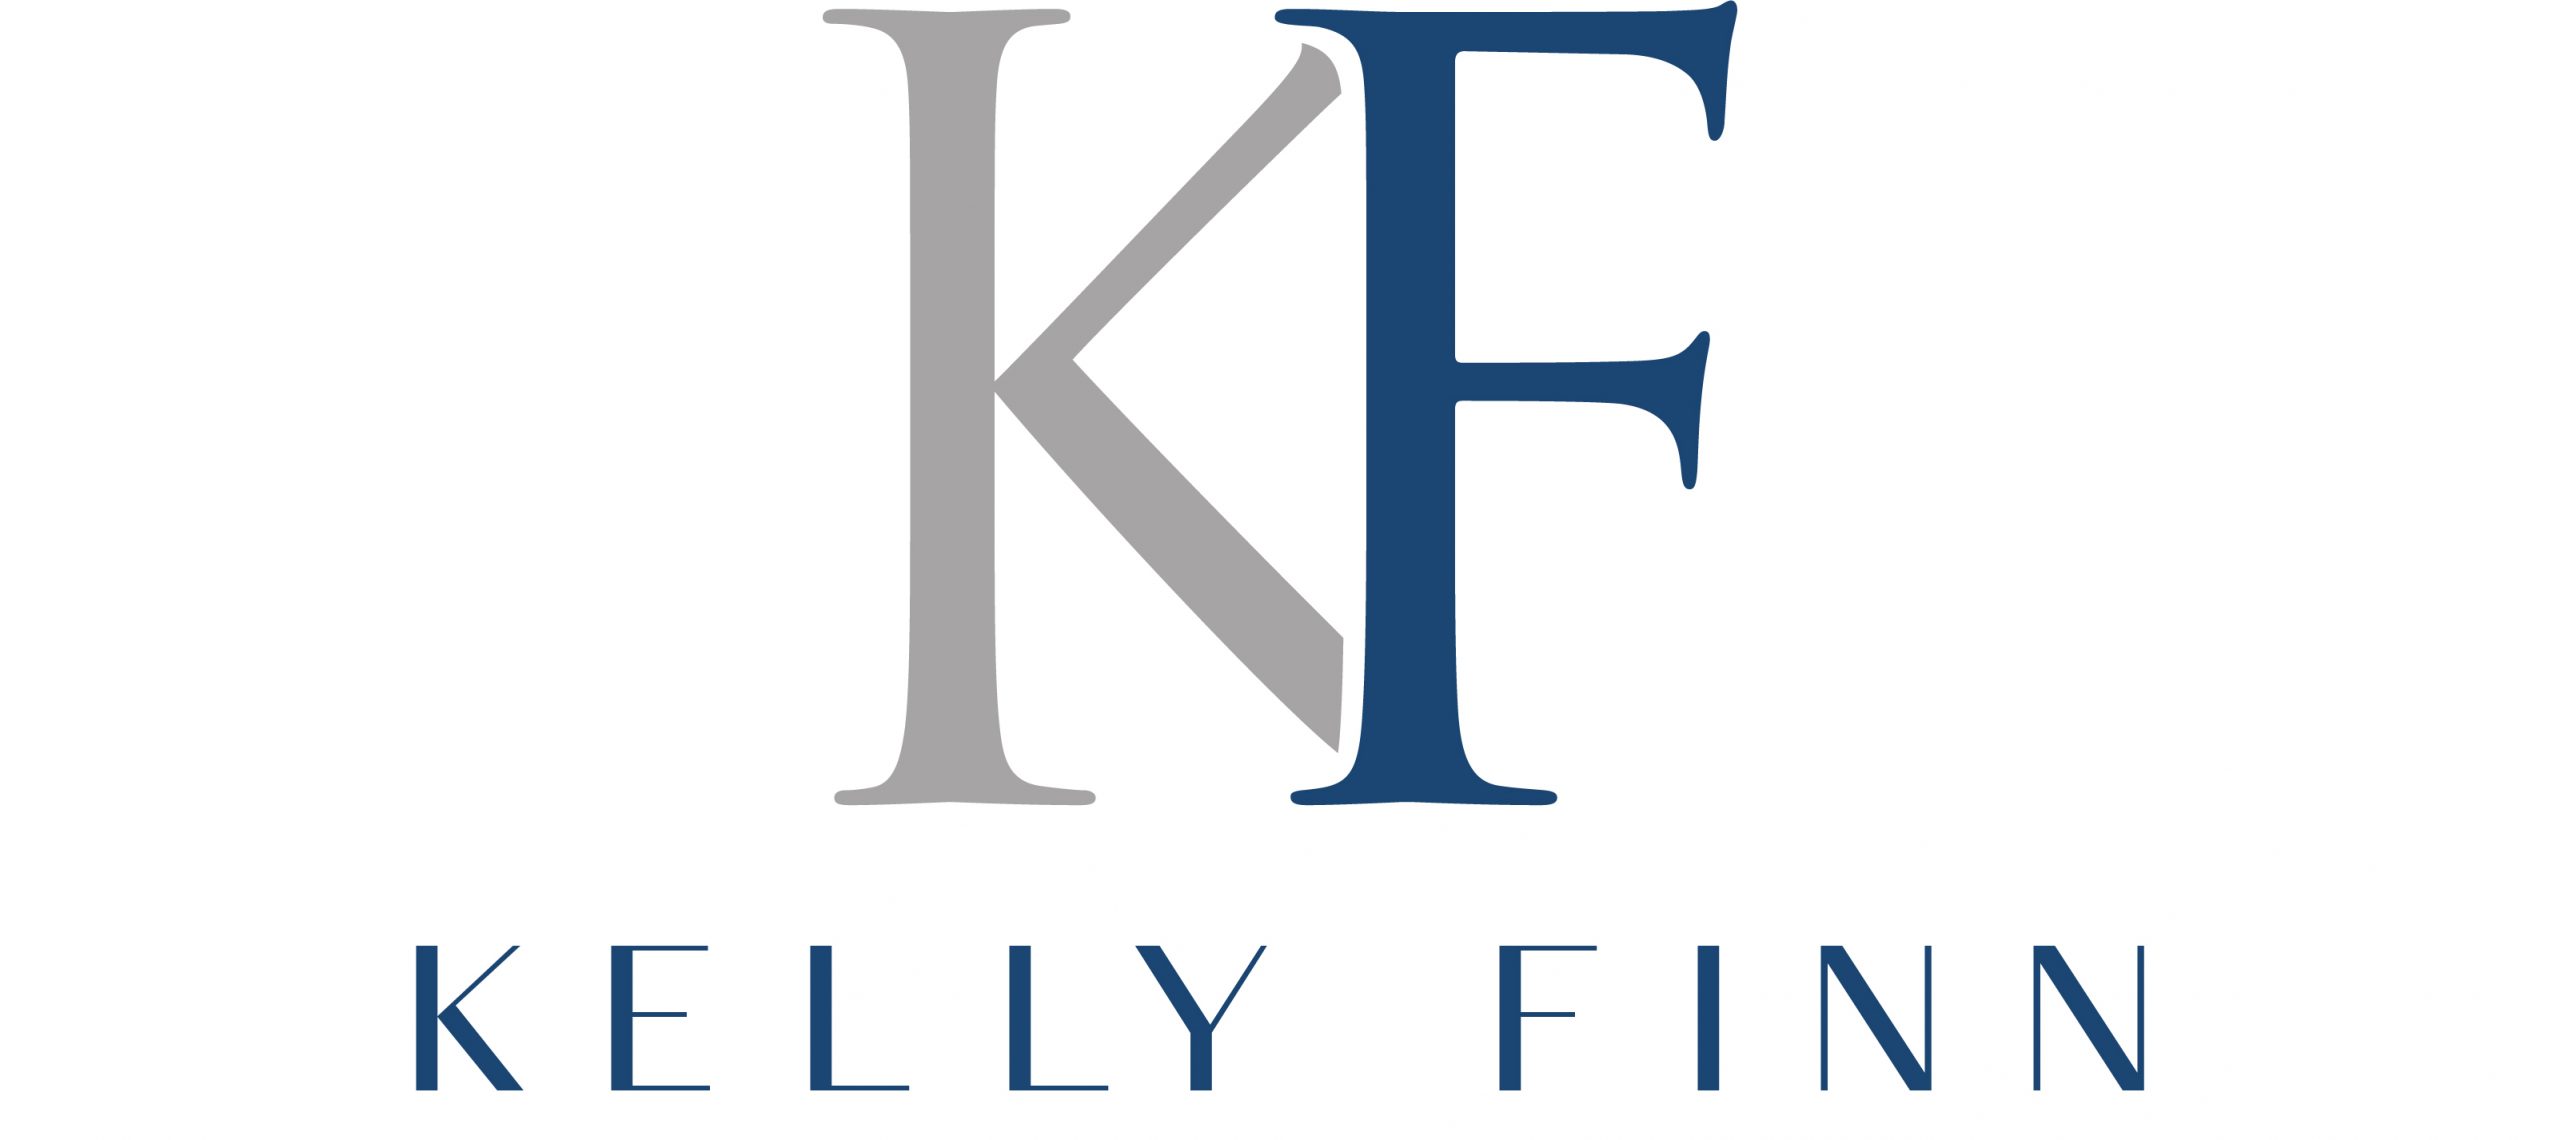 Kelly finn grey black logo